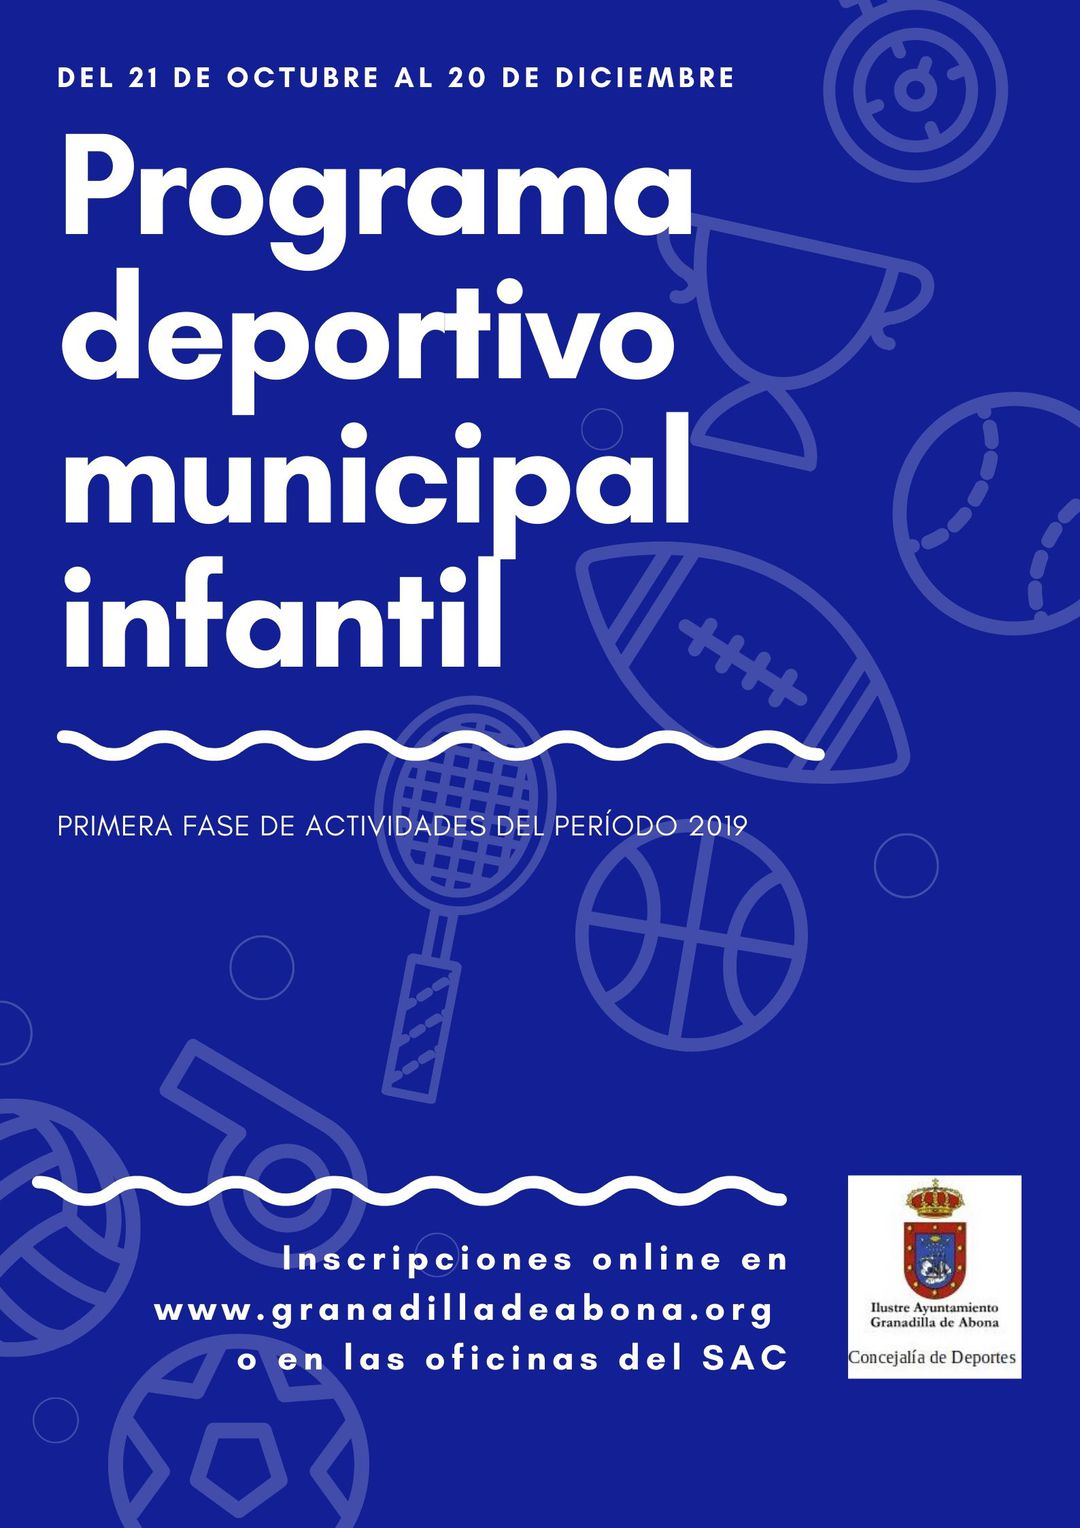 El ‘Programa Deportivo Municipal Infantil 2019’ desarrolla su primera fase hasta el 20 de diciembre